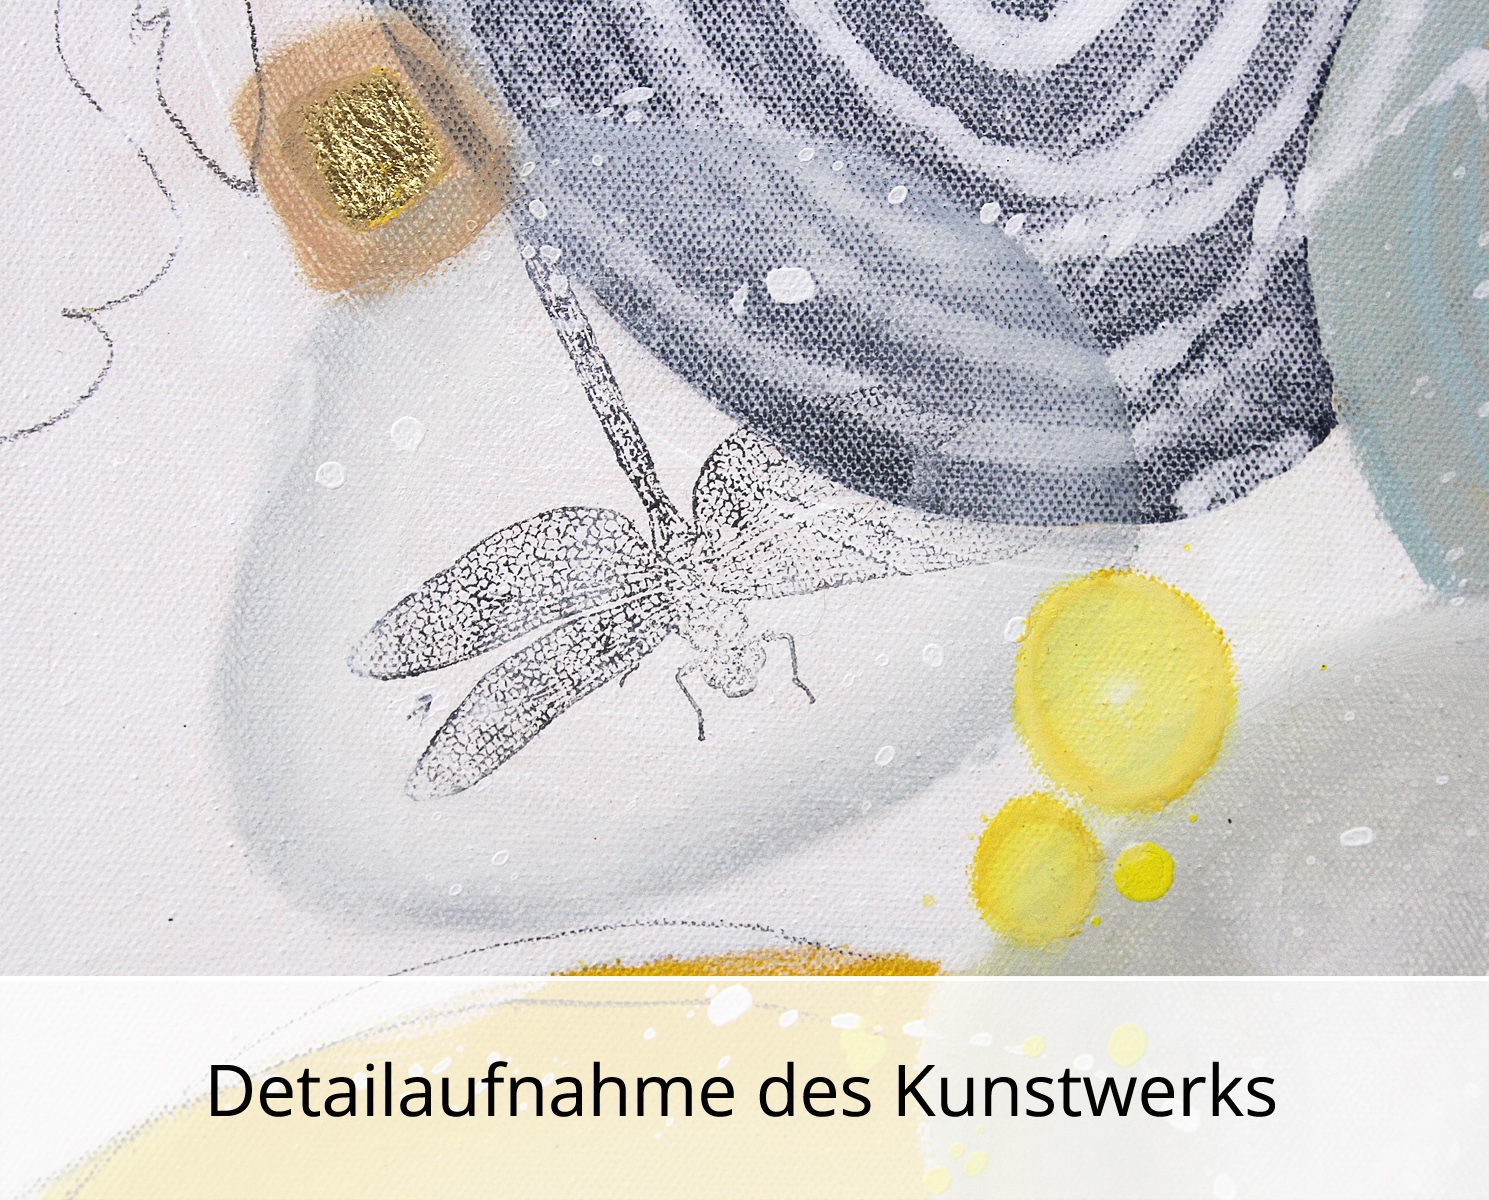 M.Kühne: "Sonnentänzer", modernes Originalgemälde (Unikat)